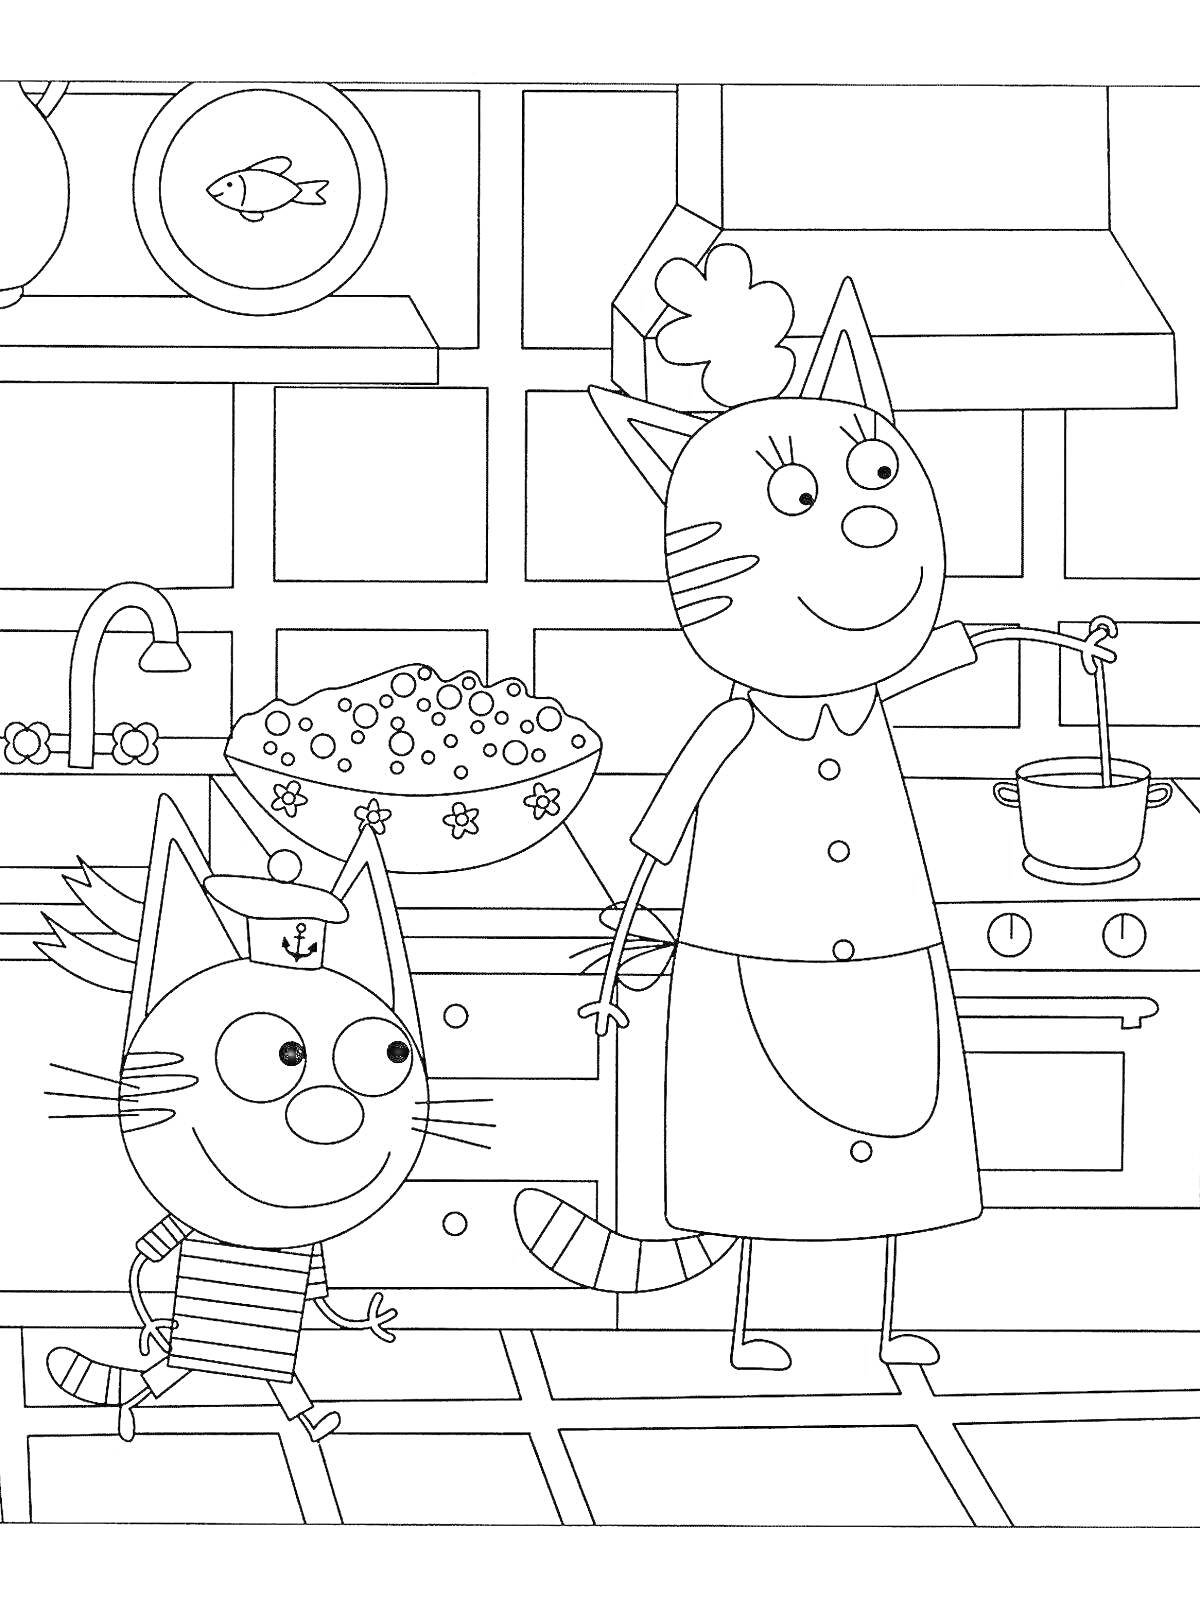 Раскраска Папа кот с сыном котенком на кухне, папа готовит еду в кастрюле, на заднем плане окно и полка с тарелкой и кувшином